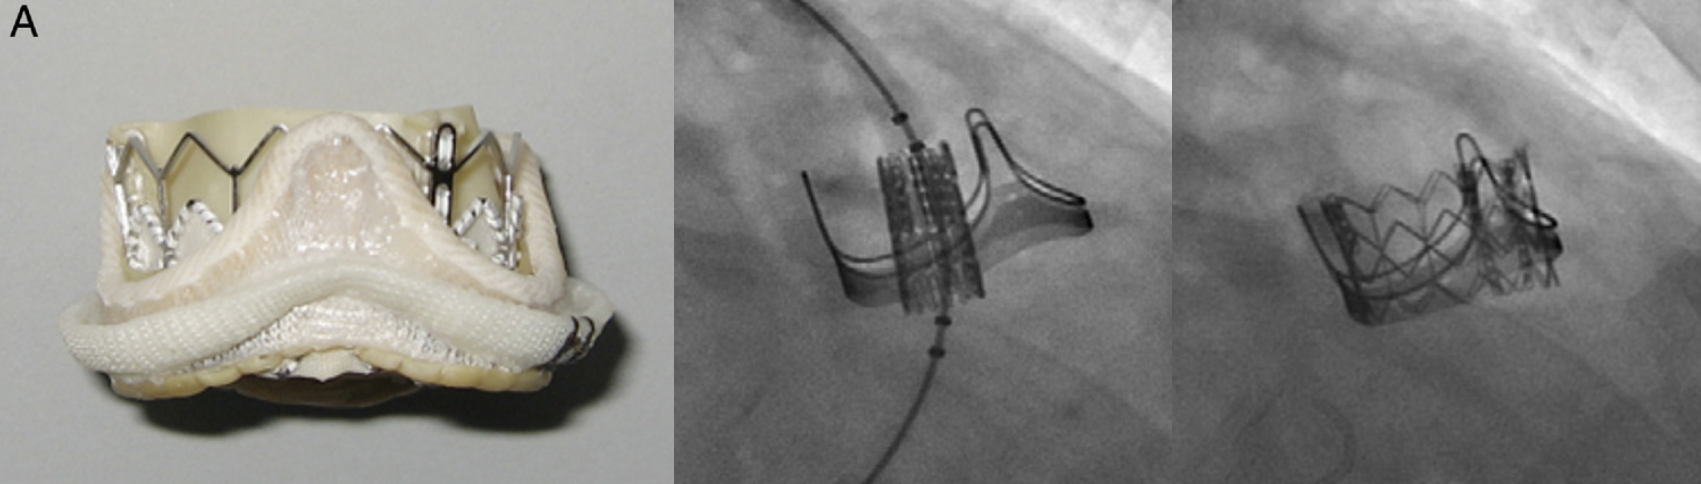 Transcatheter Valve-in-Valve Implantation for Failed Surgical Bioprosthetic Valves